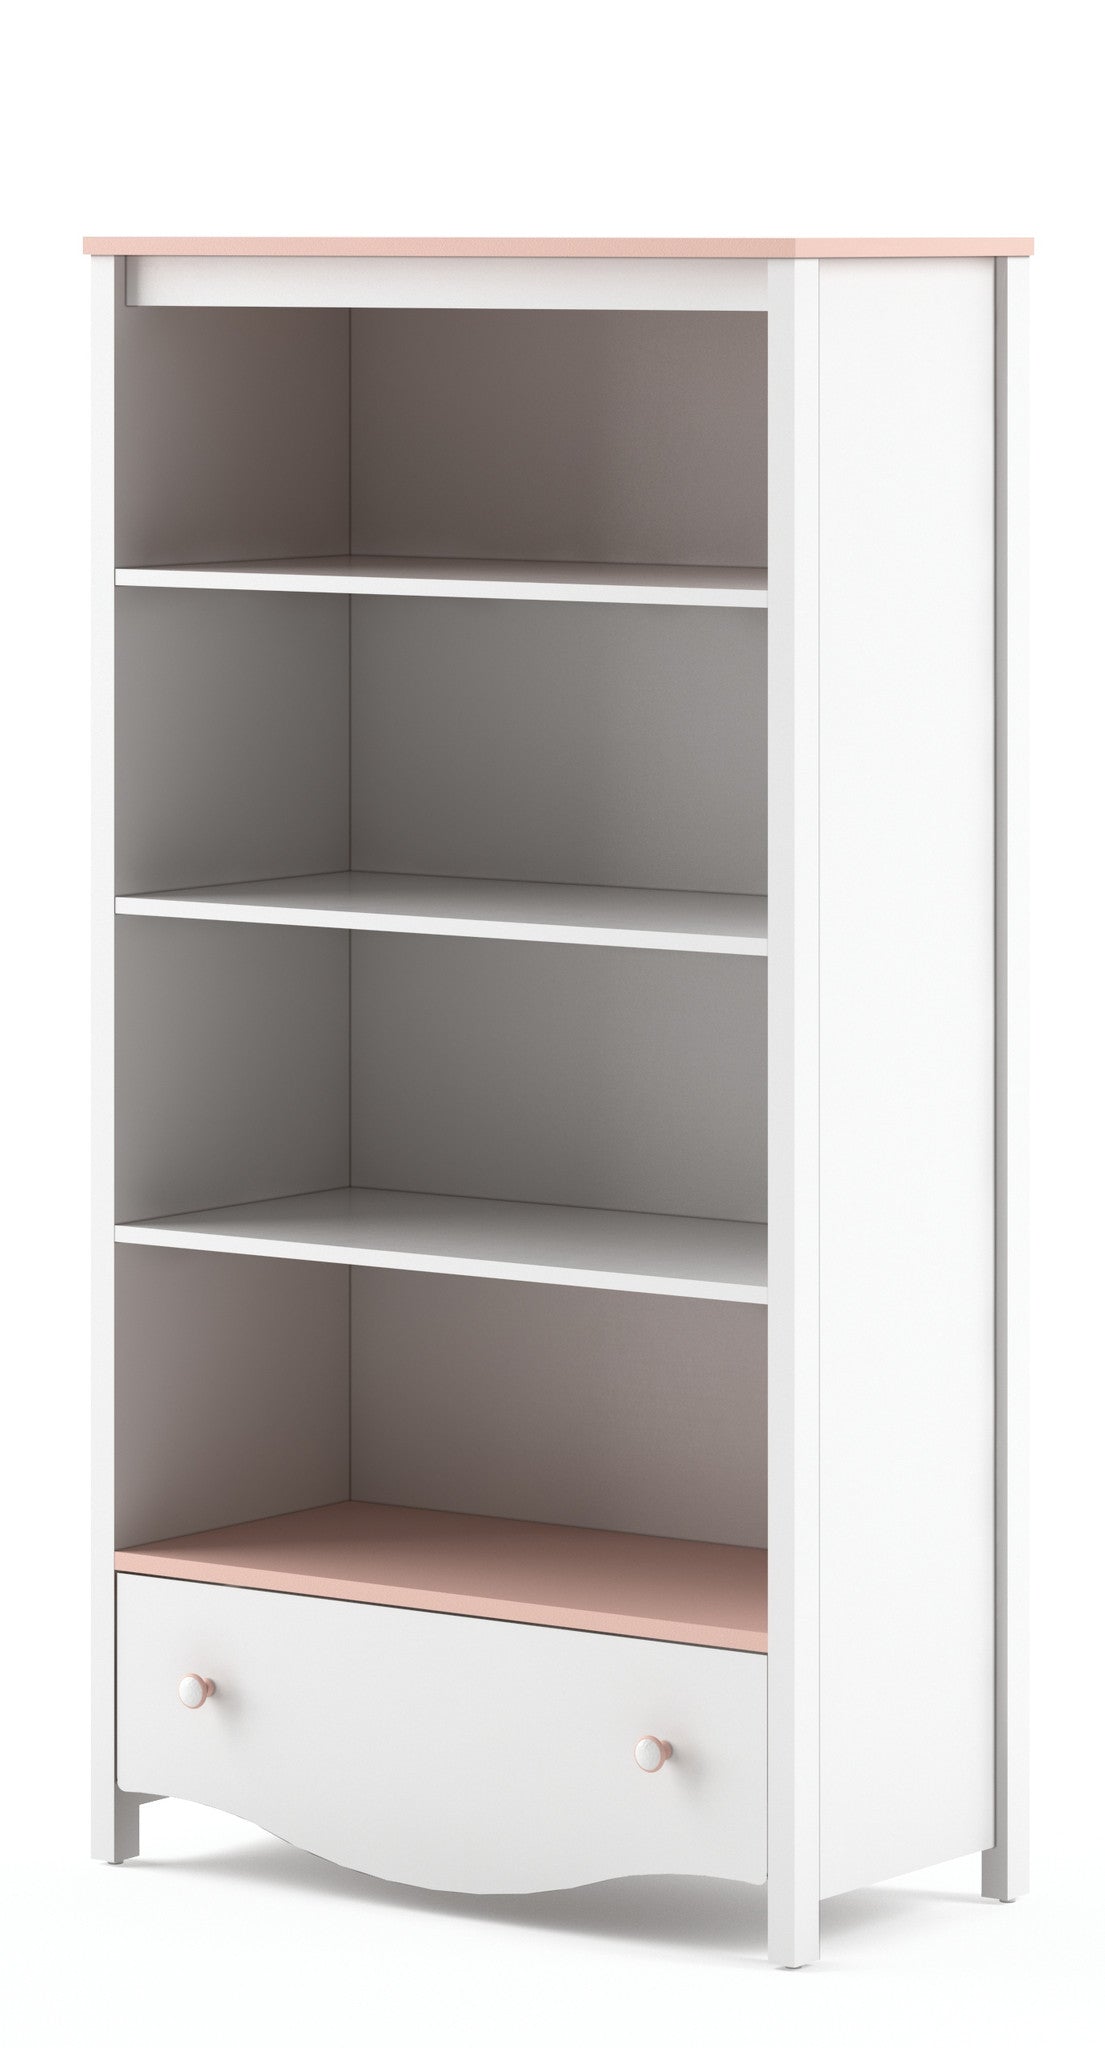 View Mia MI02 Bookcase Cabinet information